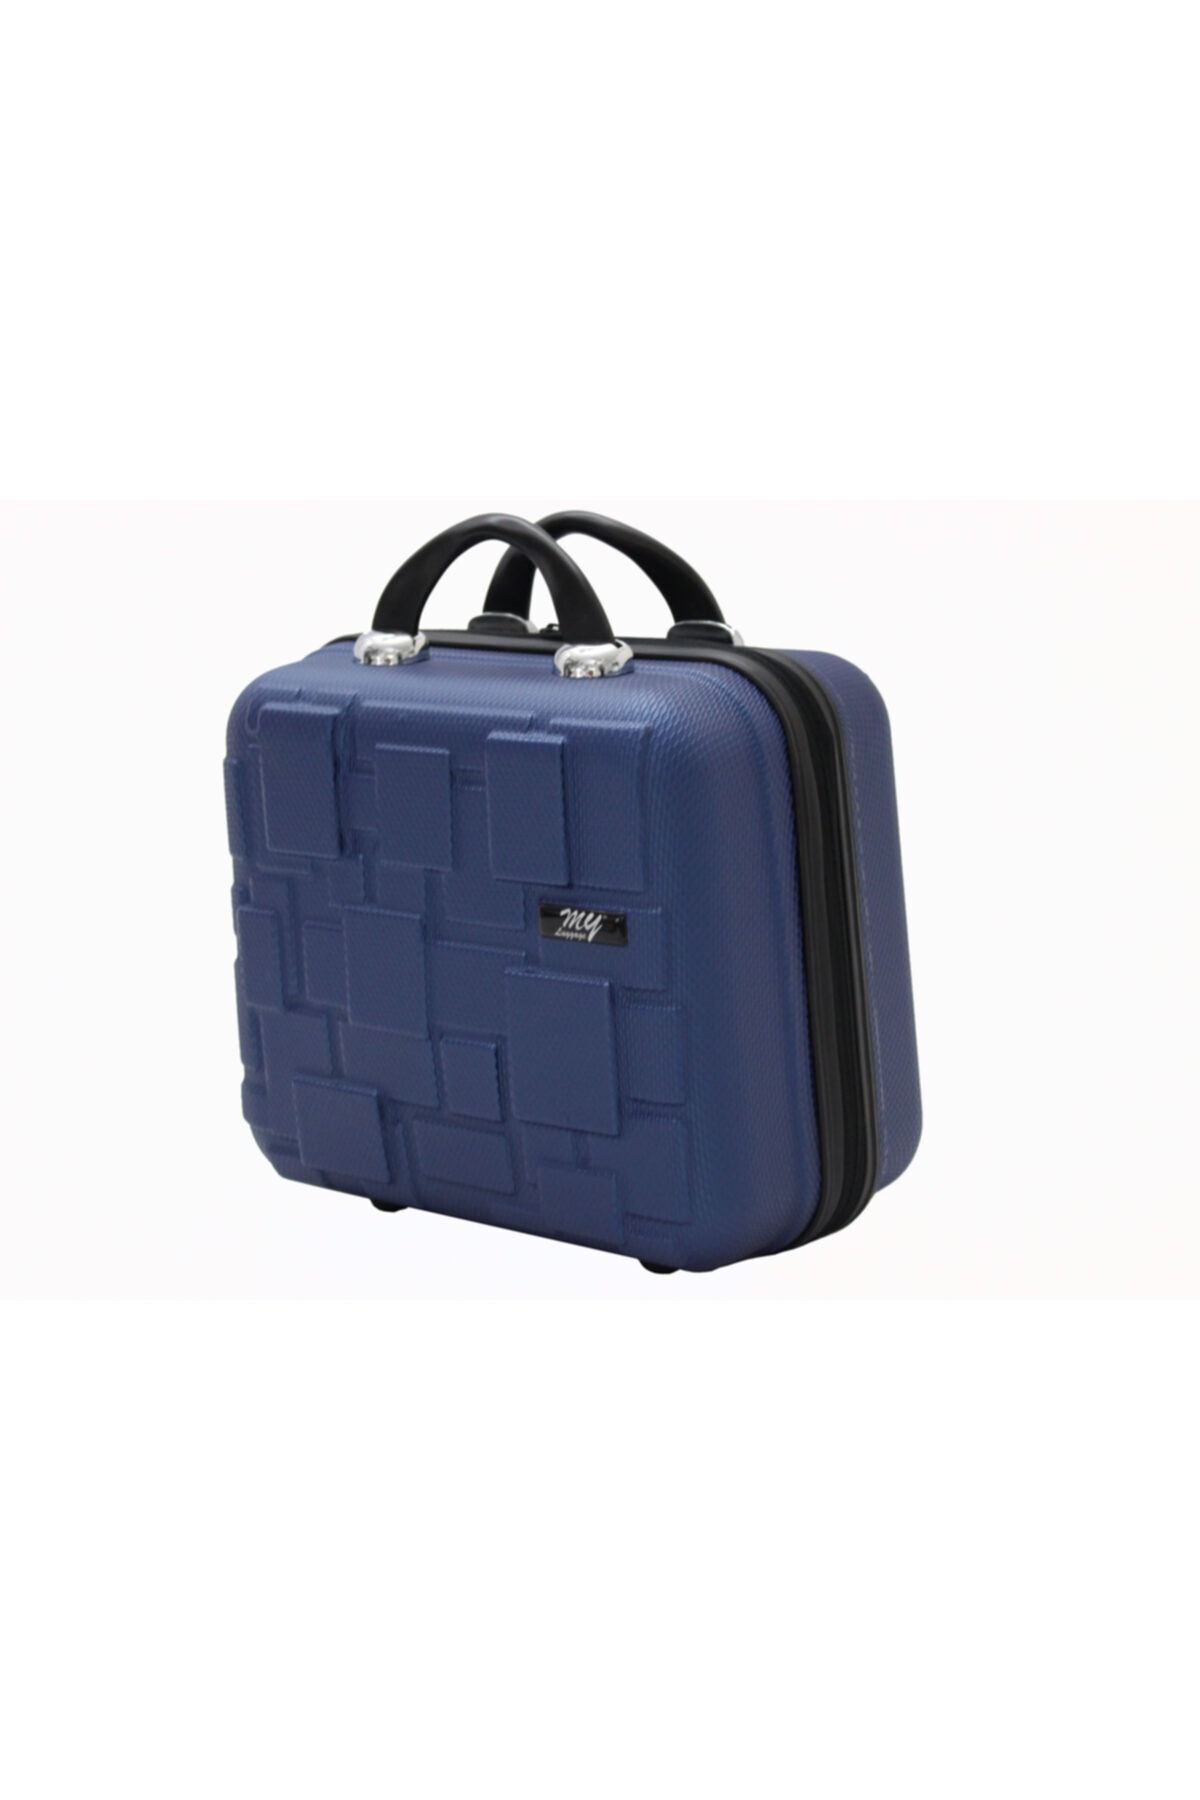 MY SARACİYE My Luggage 50136 Çivit Mavi Bakalit Seyahat Makyaj Çantası